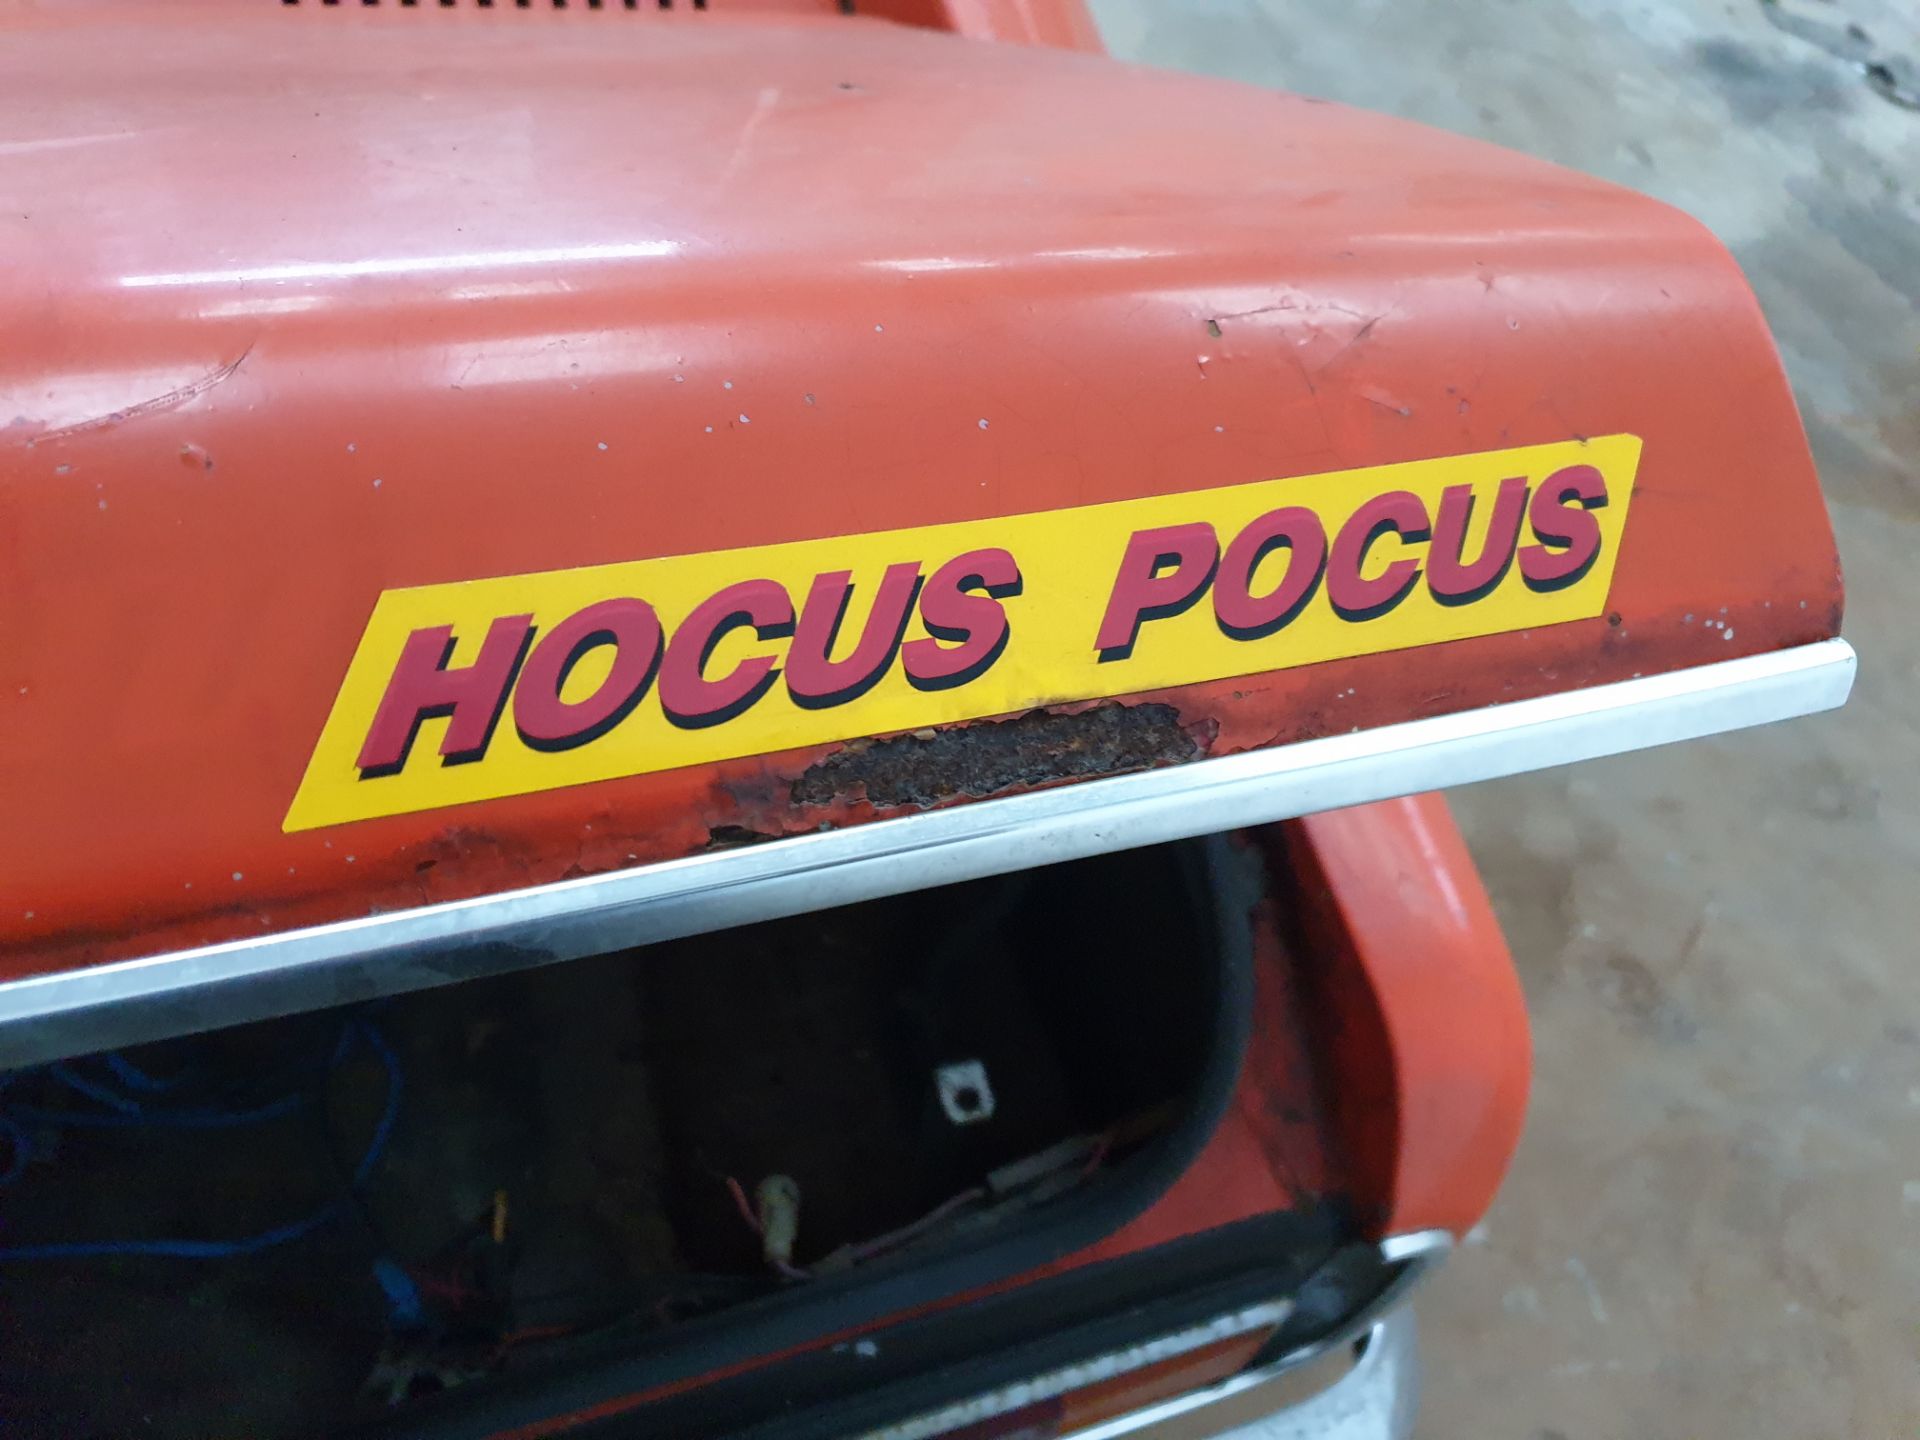 Ford Capri "Hocus Pocus" Drag Car - Image 8 of 24